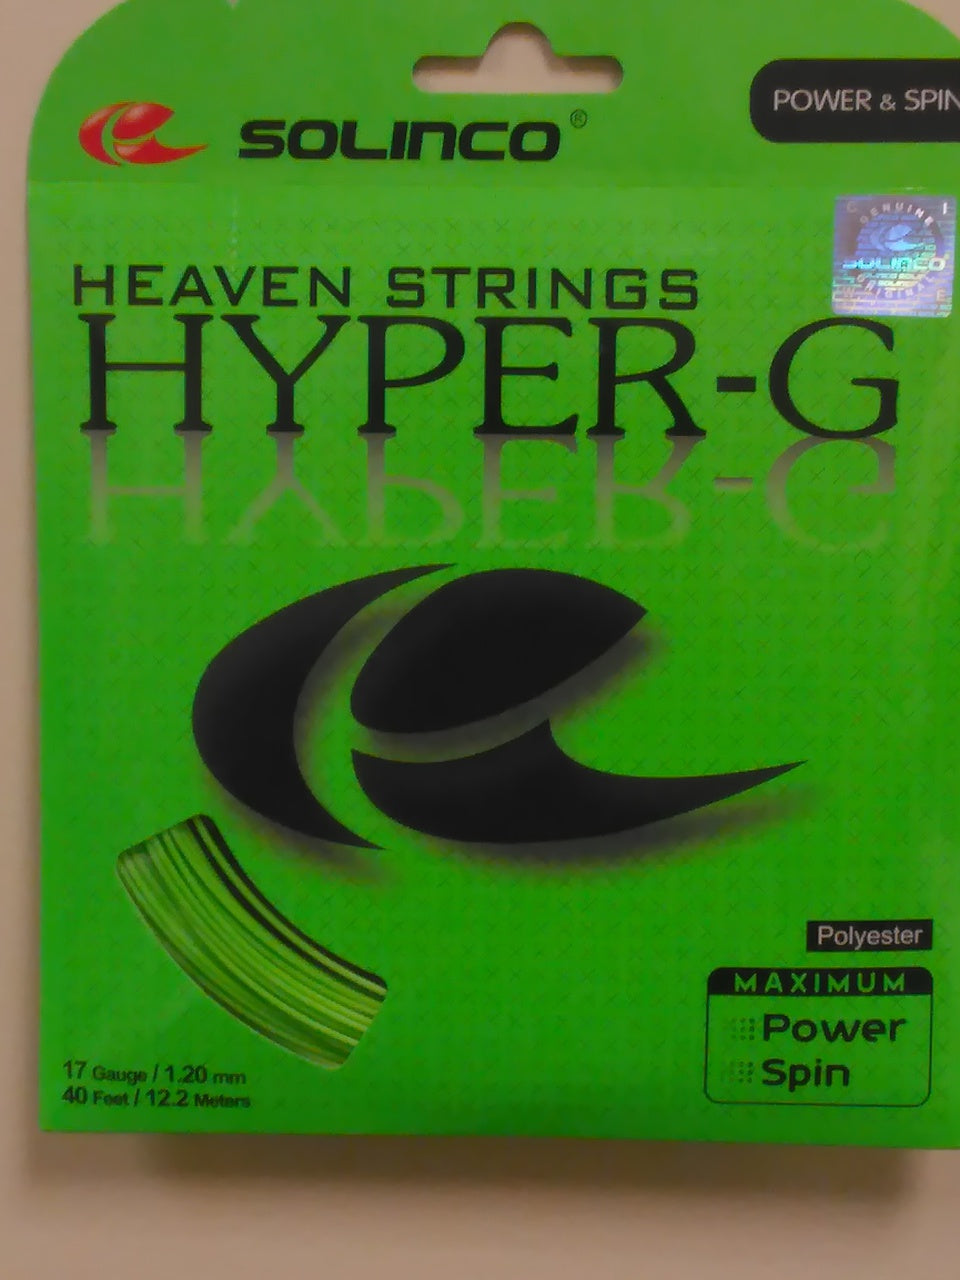 Solinco Heaven Strings Hyper-G Tennis String Set-17g/1.20mm